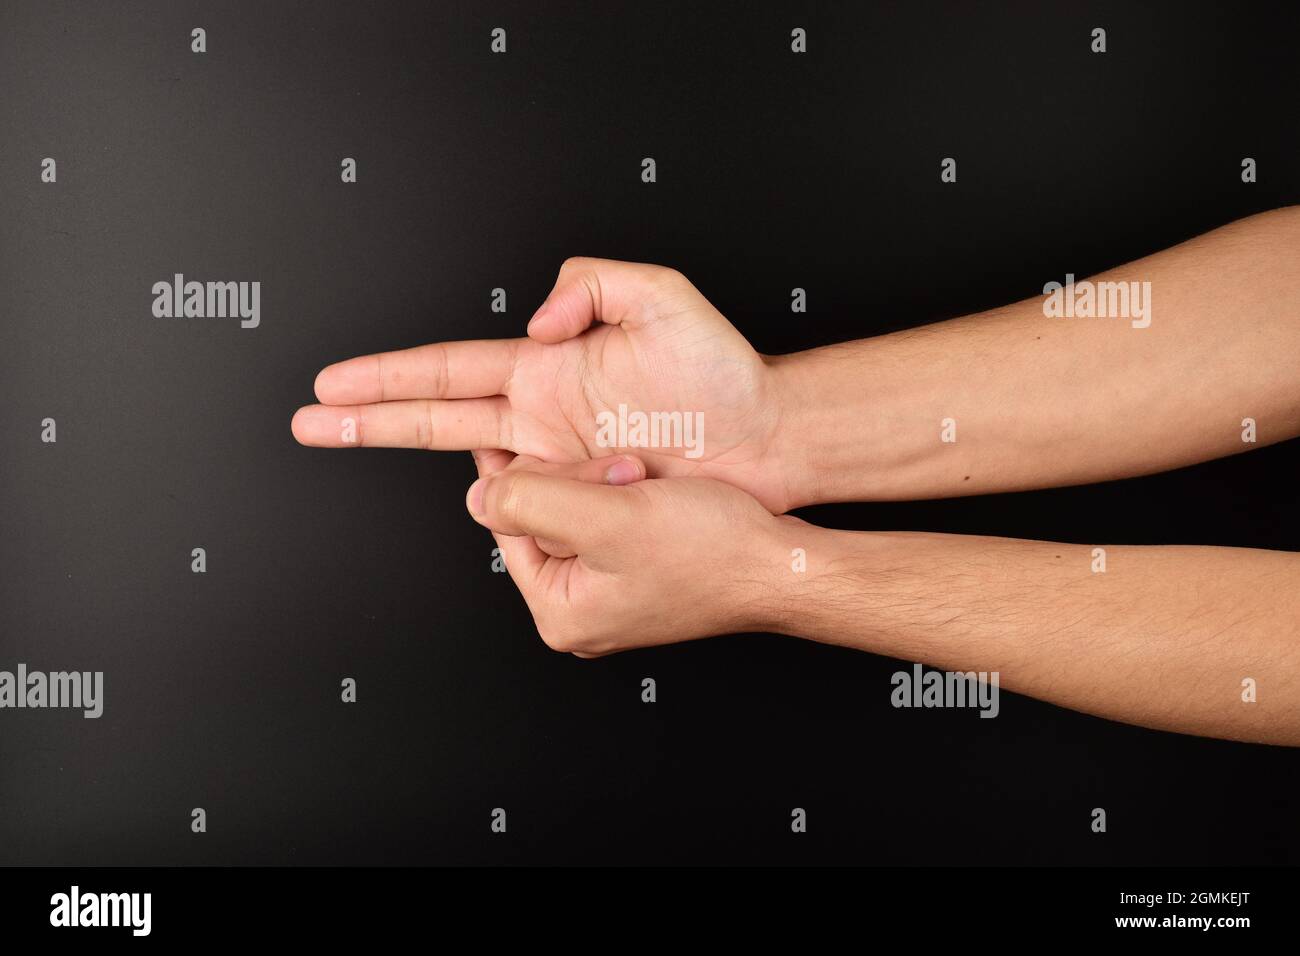 man making gun gesture on dark background Stock Photo